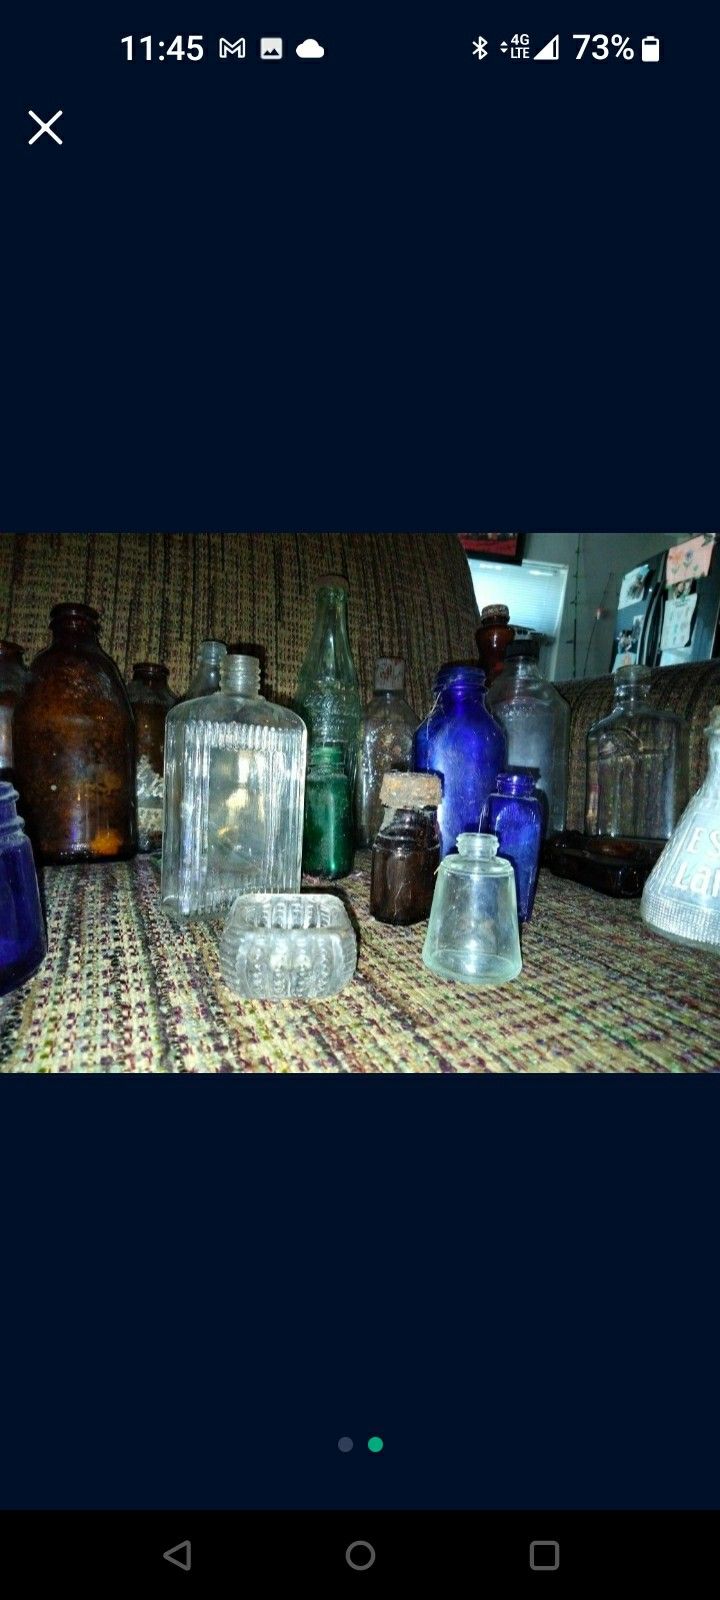 Glass, Antique, Collectibles, Bottles, Glass Bottles, Glass Jars, Old,  Candle Holder, Beer, Medicine